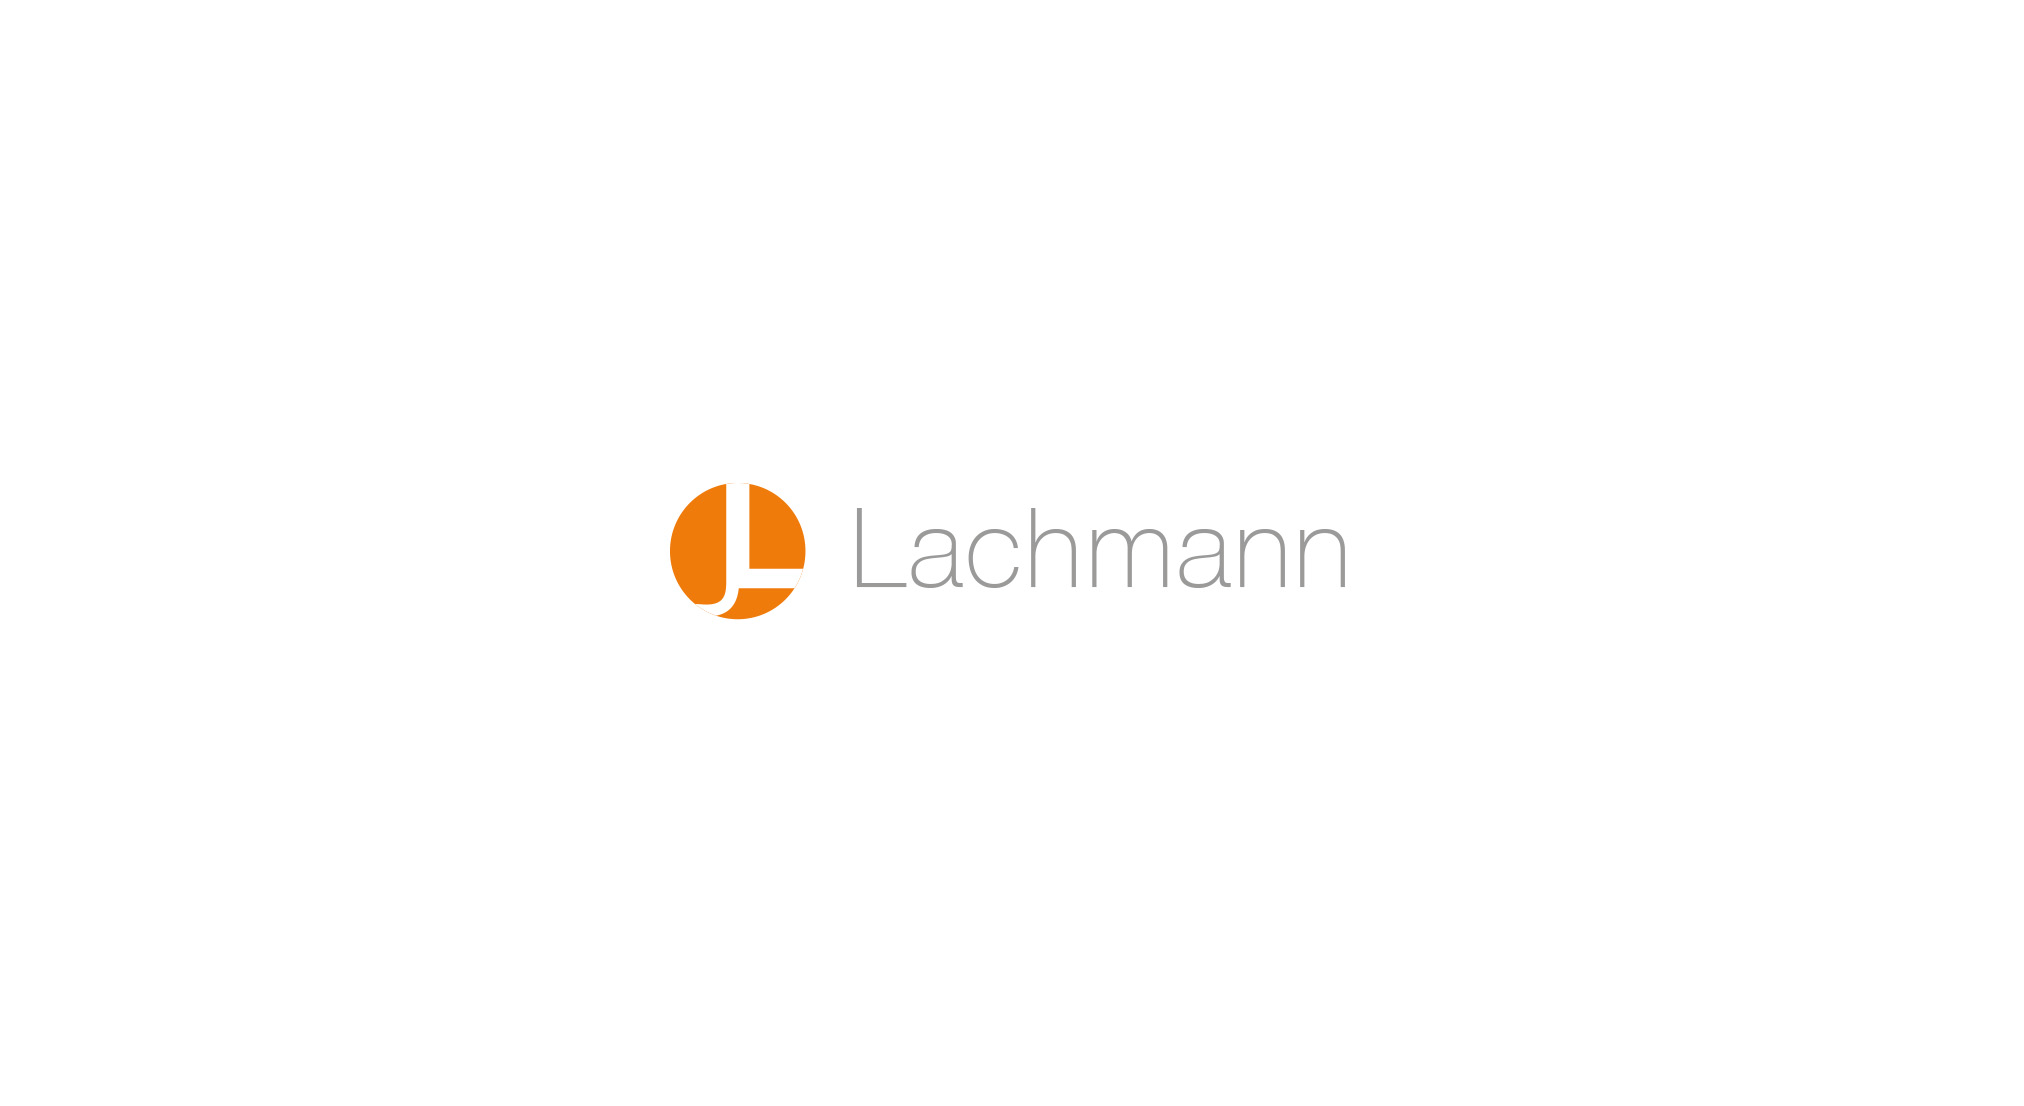 Lachmann JL Monogramm in orangem Kreis